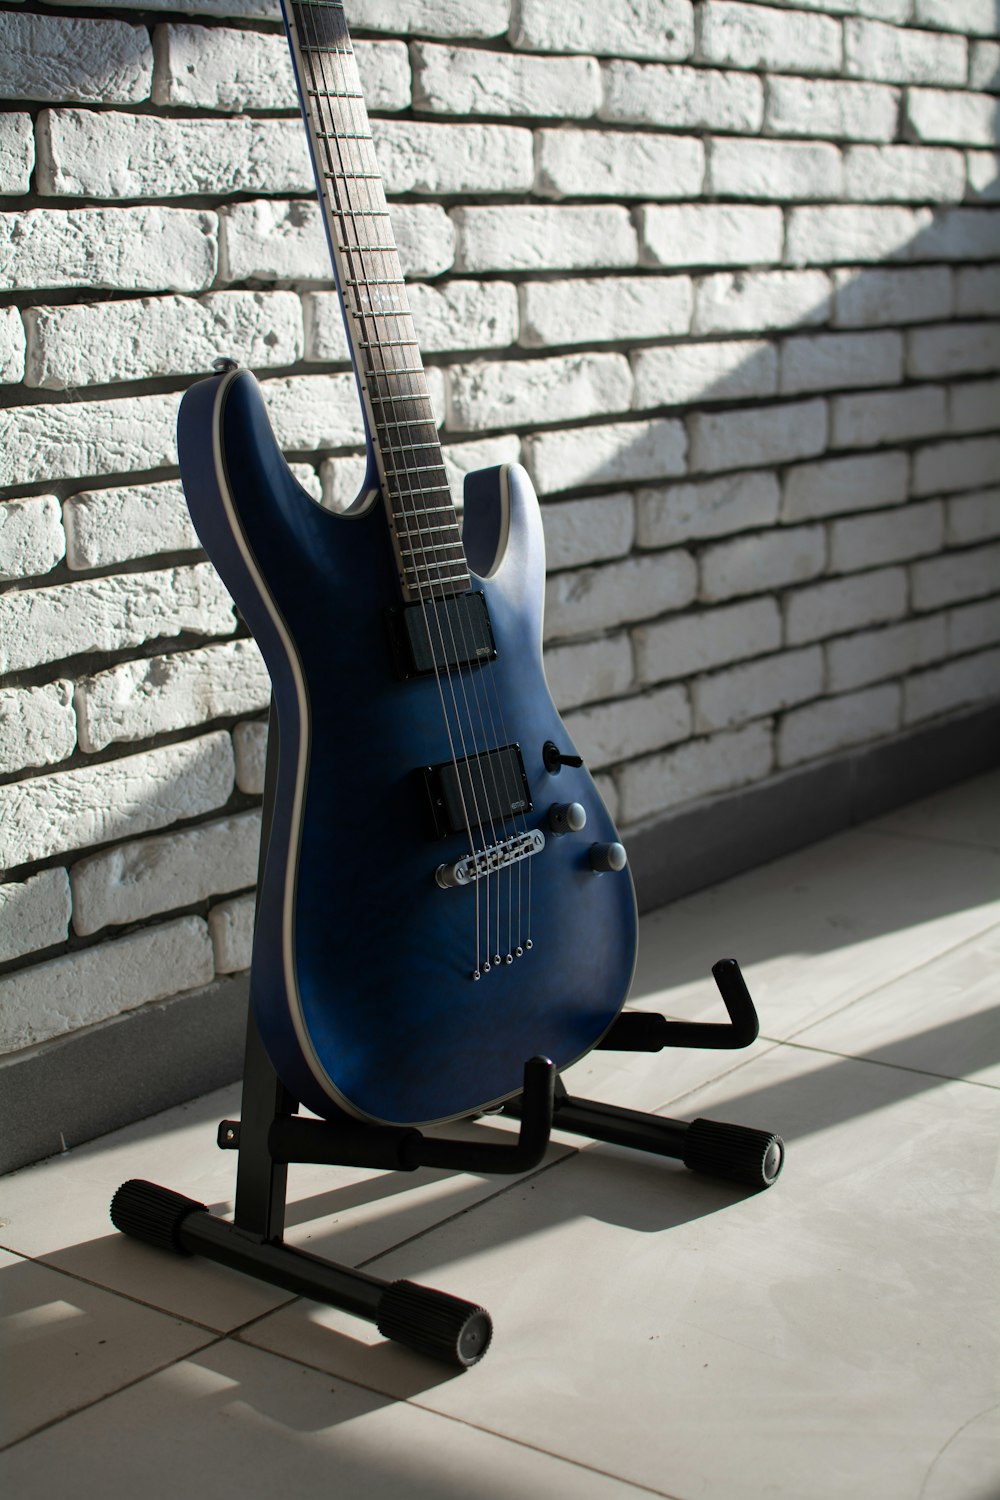 a blue electric guitar